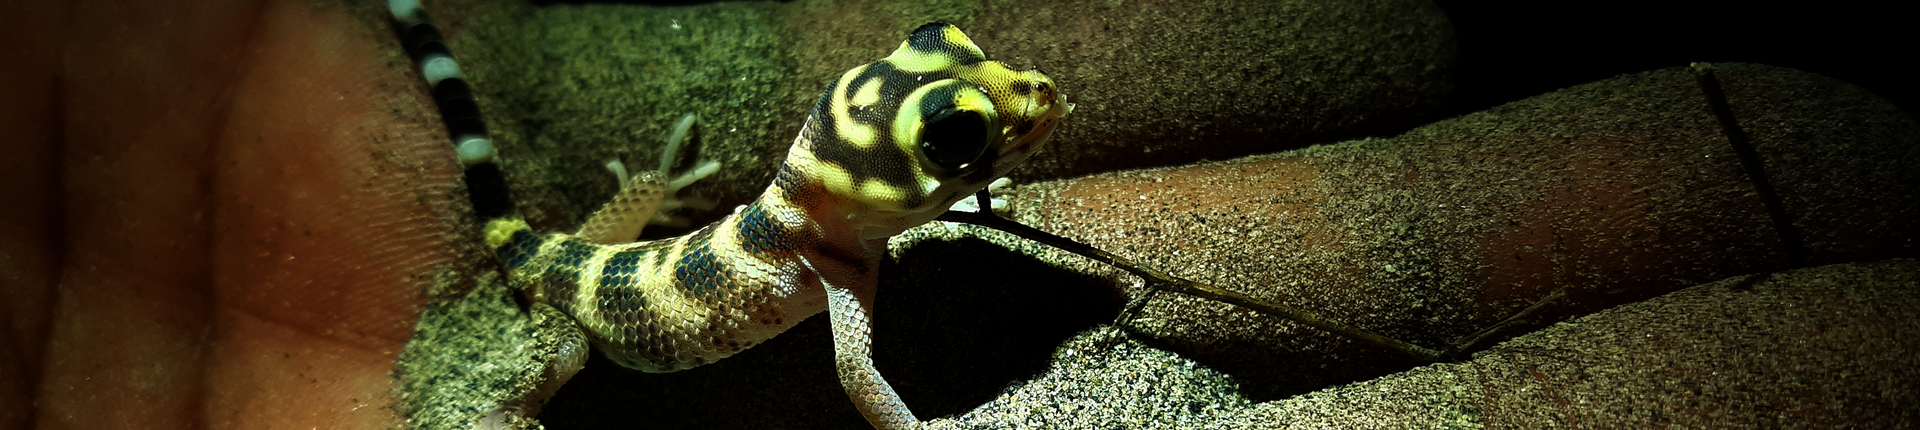 Rustamov Frog Eze Gecko Foto: Matluba Mustaeva